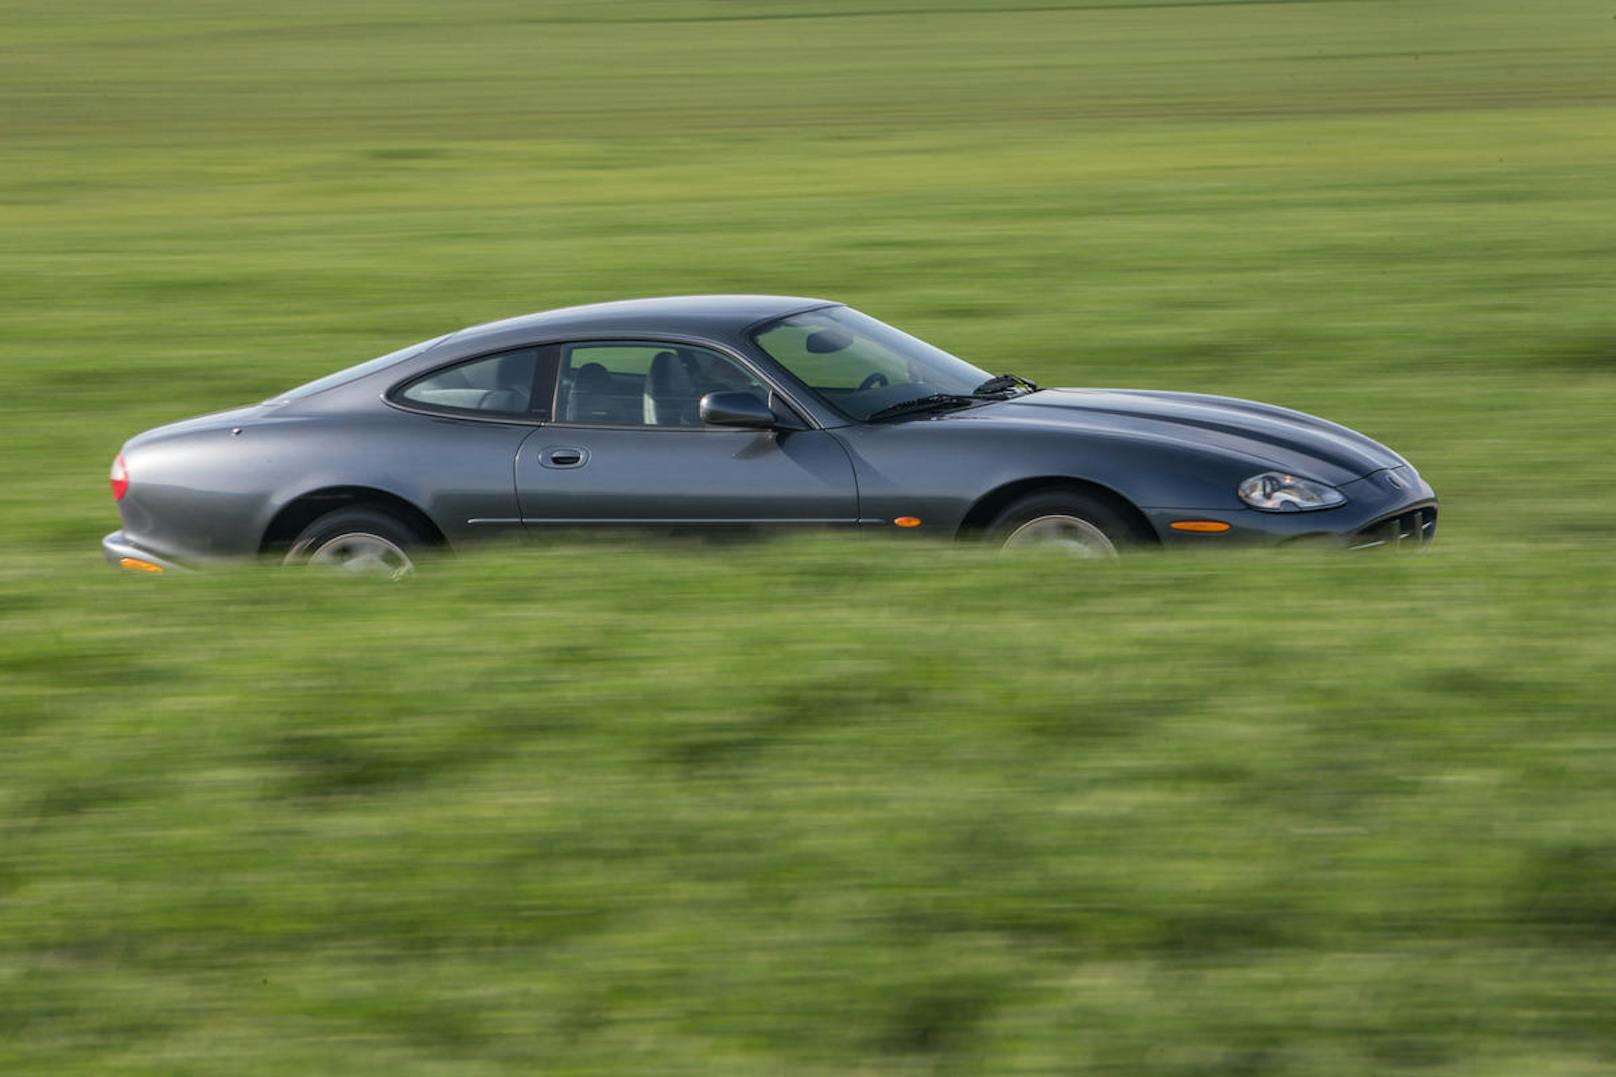 Den Sprint von 0 bis 100 km/h schaffte der Jaguar XK8 in weniger als sieben Sekunden.